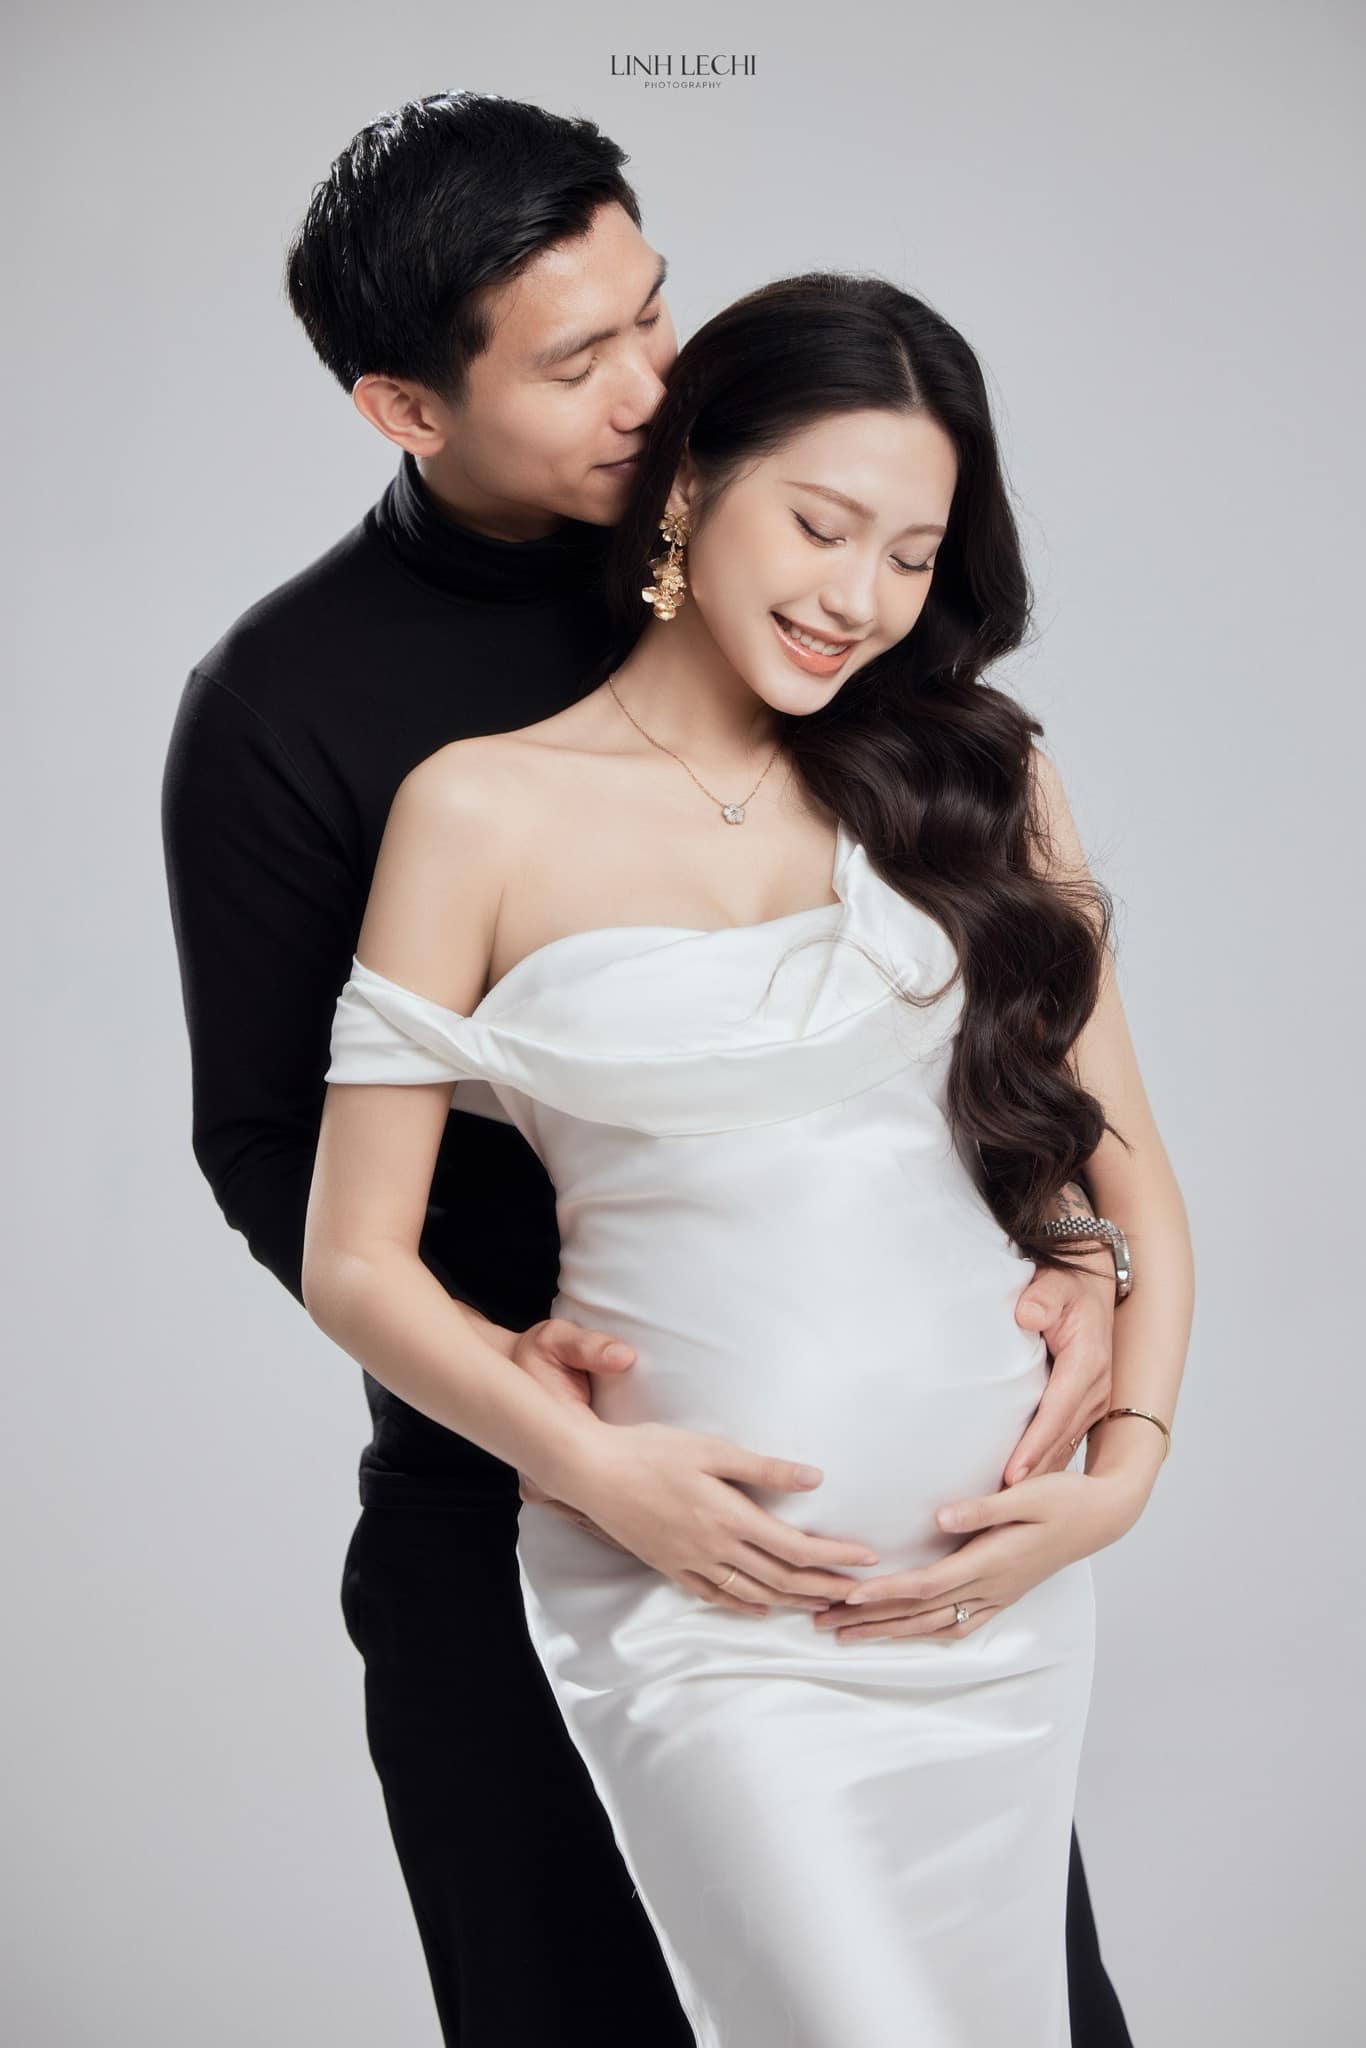 Hoà Minzy chúc mừng vợ Đoàn Văn Hậu mang thai, em bé 'cực phẩm' sắp chào đời - ảnh 1